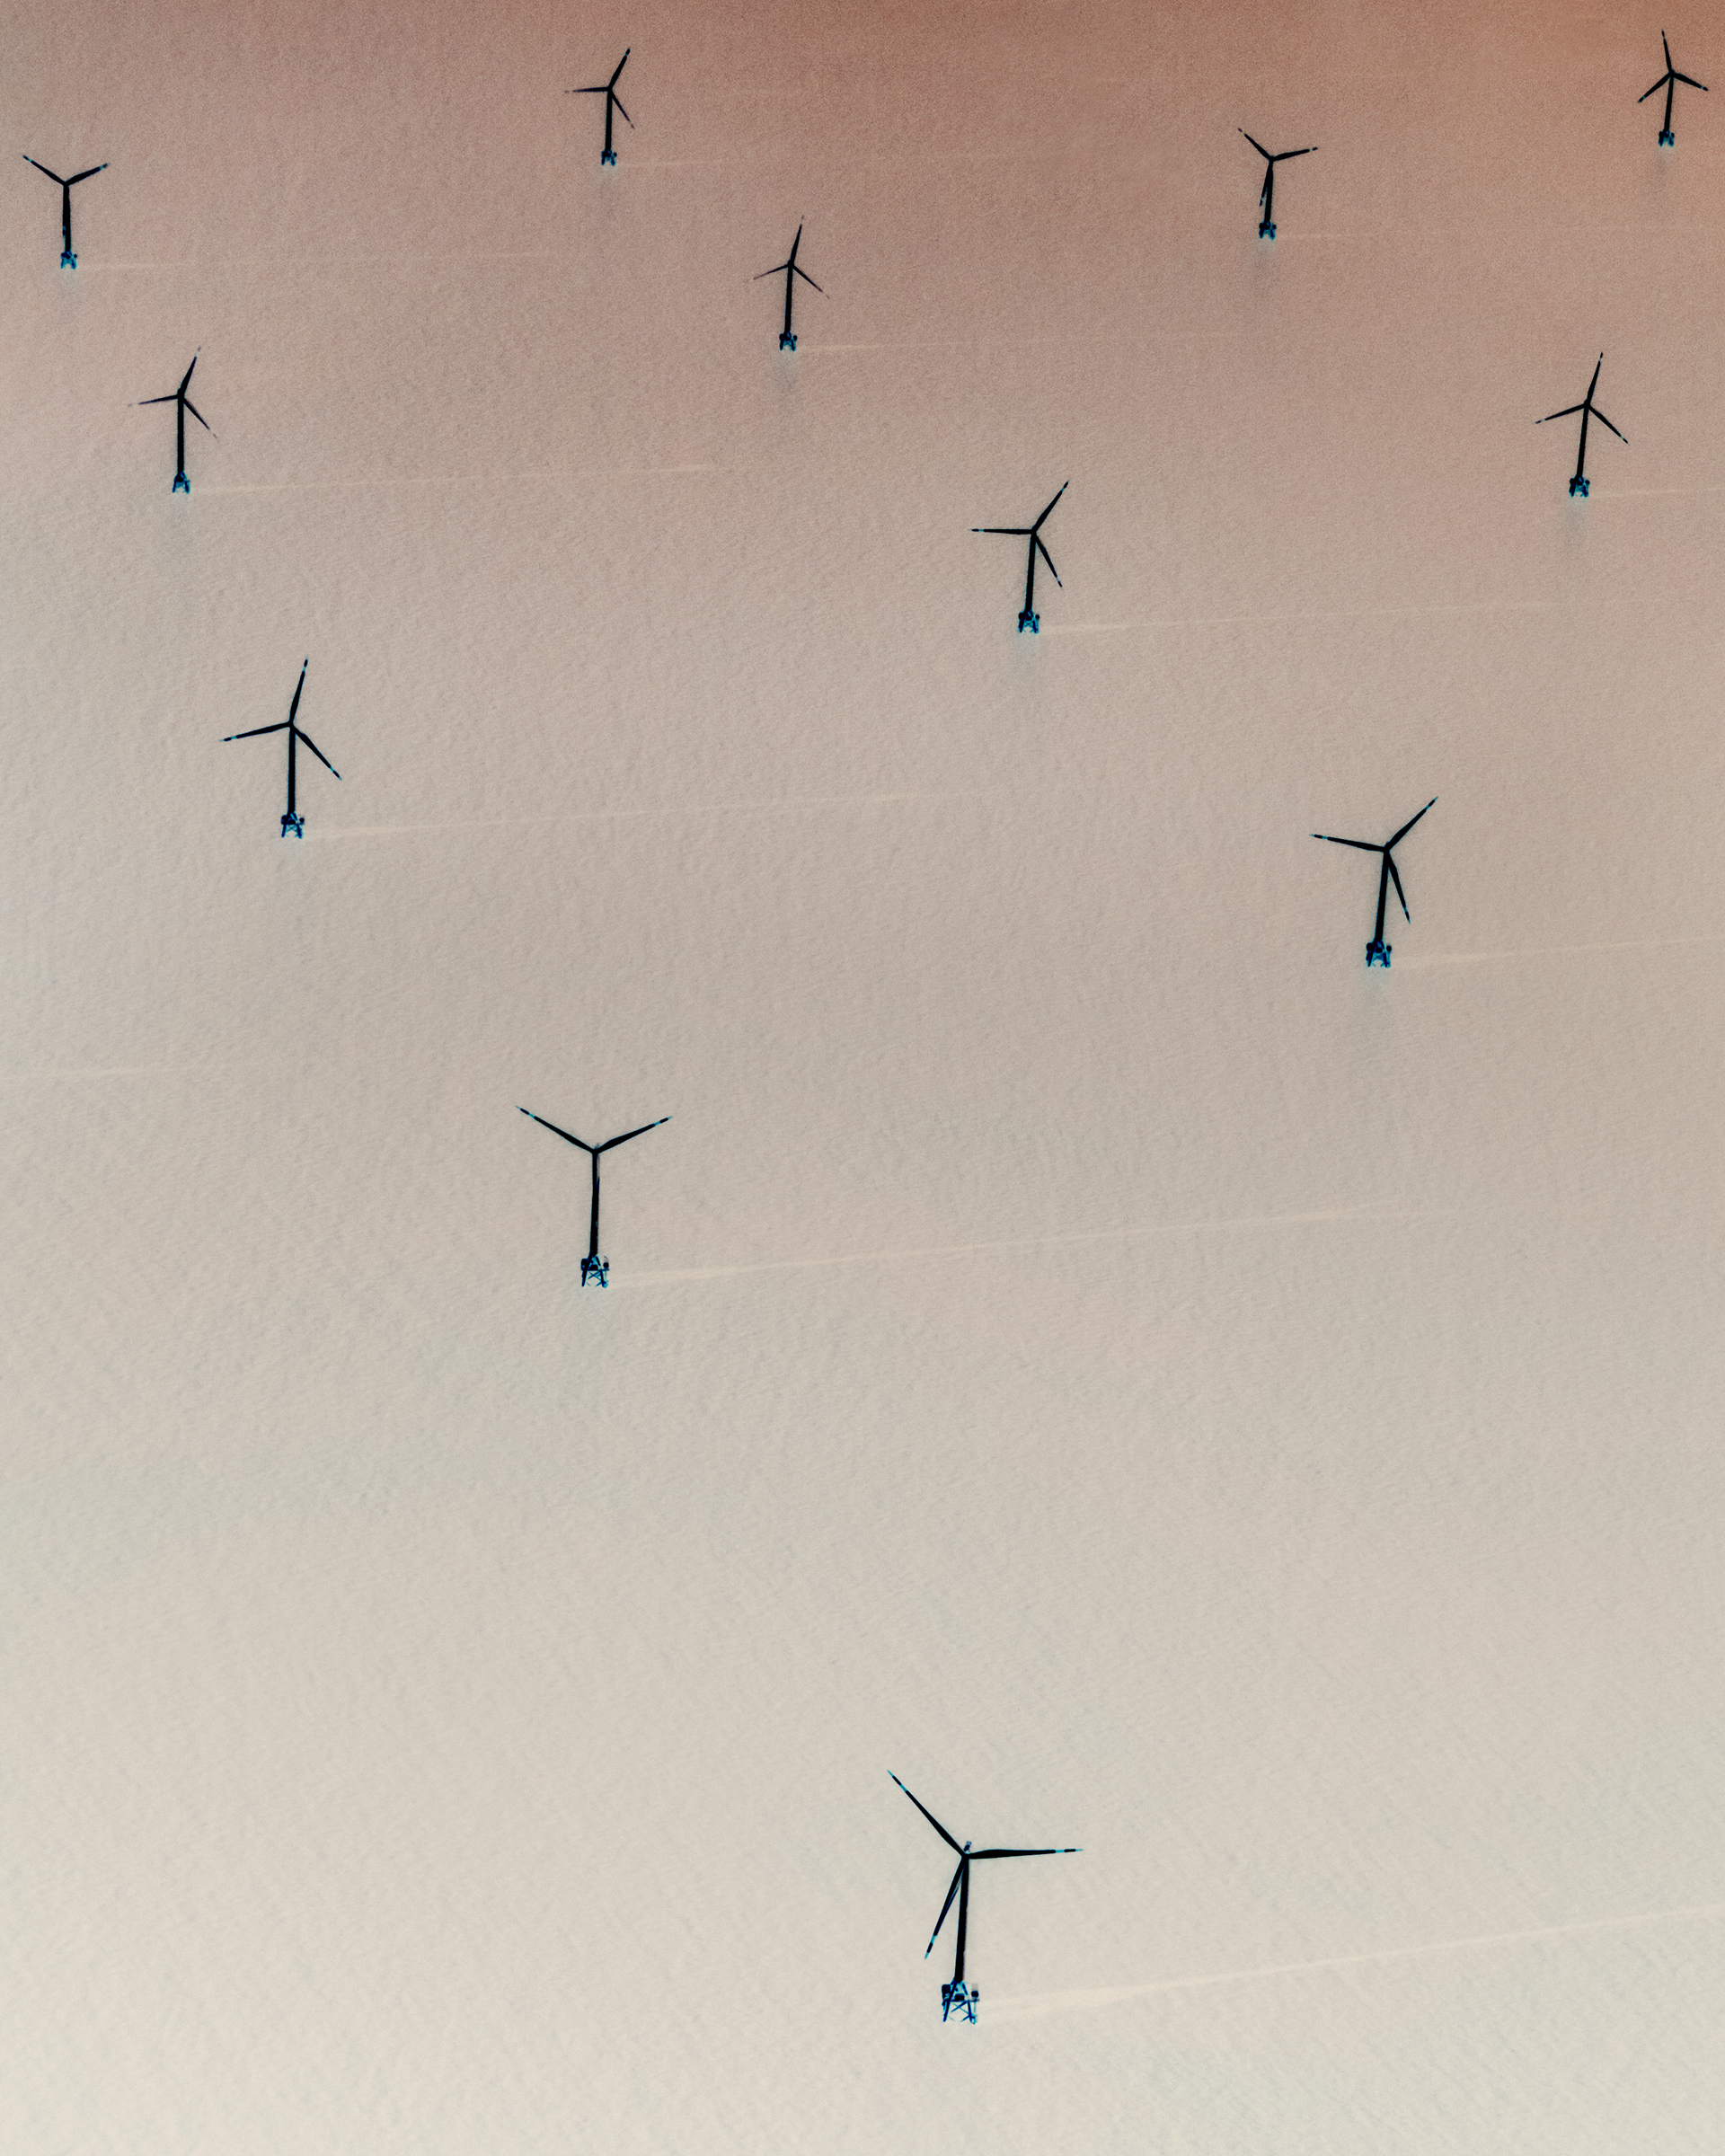 An offshore wind farm near Shanghai.